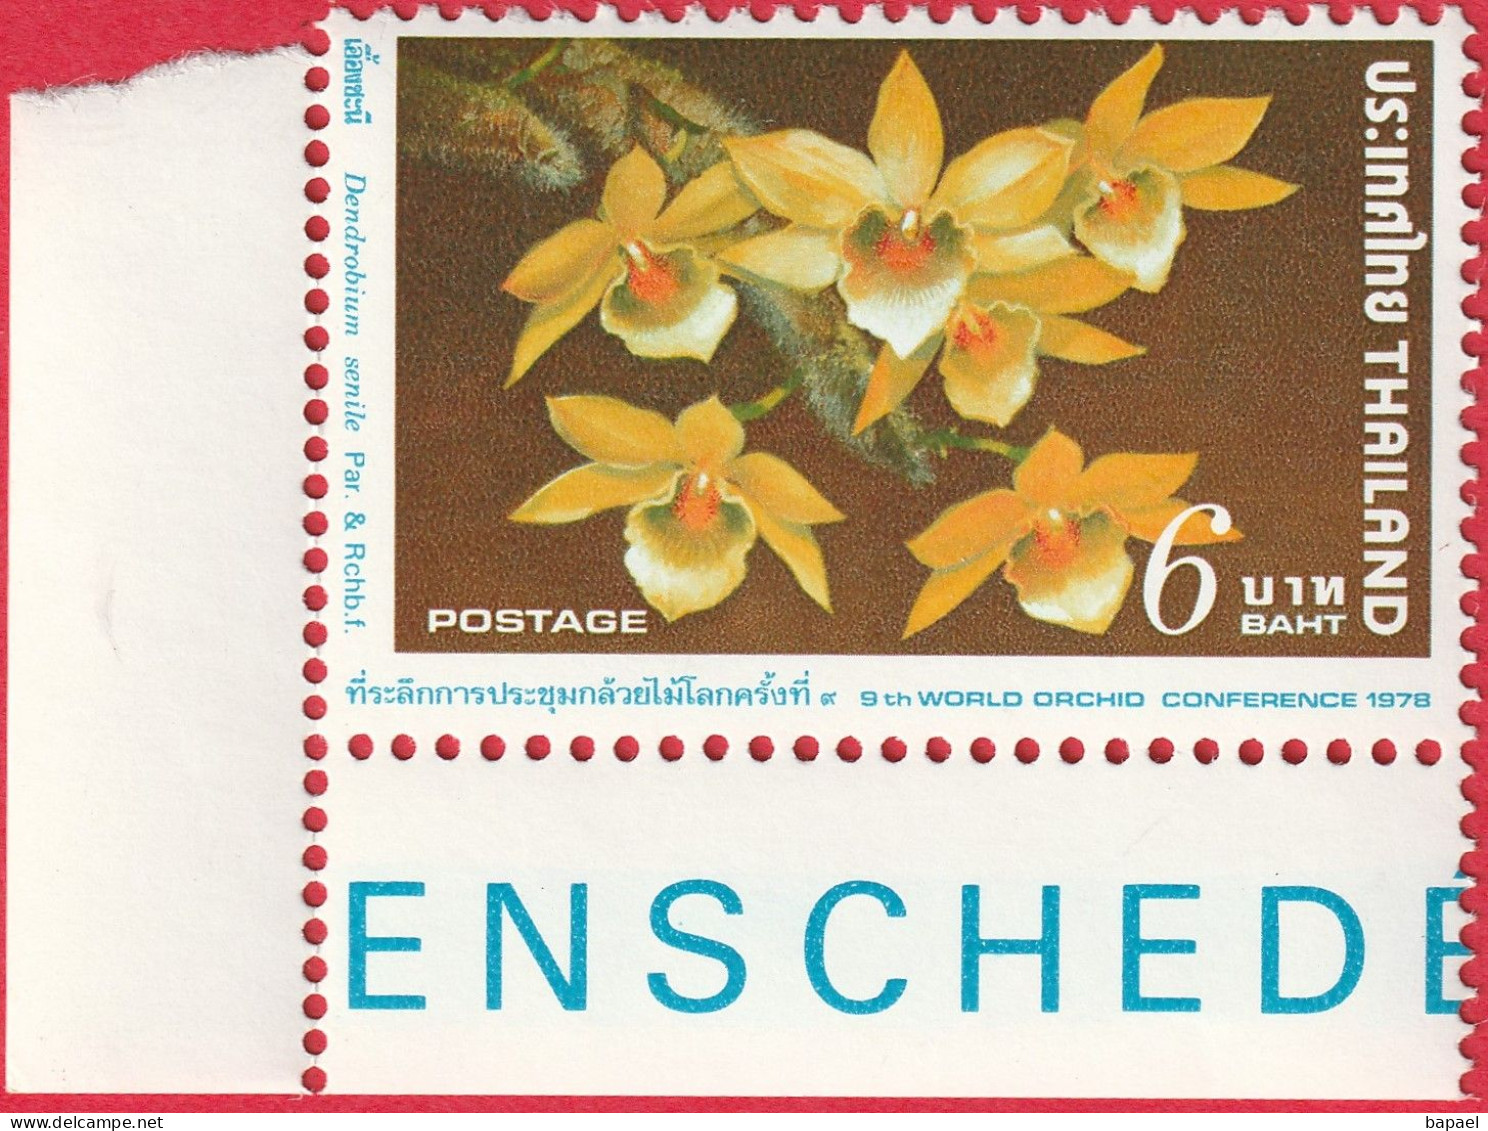 N° Yvert & Tellier 841 - Timbre De Thaïlande (1978) (Neuf - **) - 9ème Conférence Mondiale Orchidées (Dendrobiome Senile - Thailand